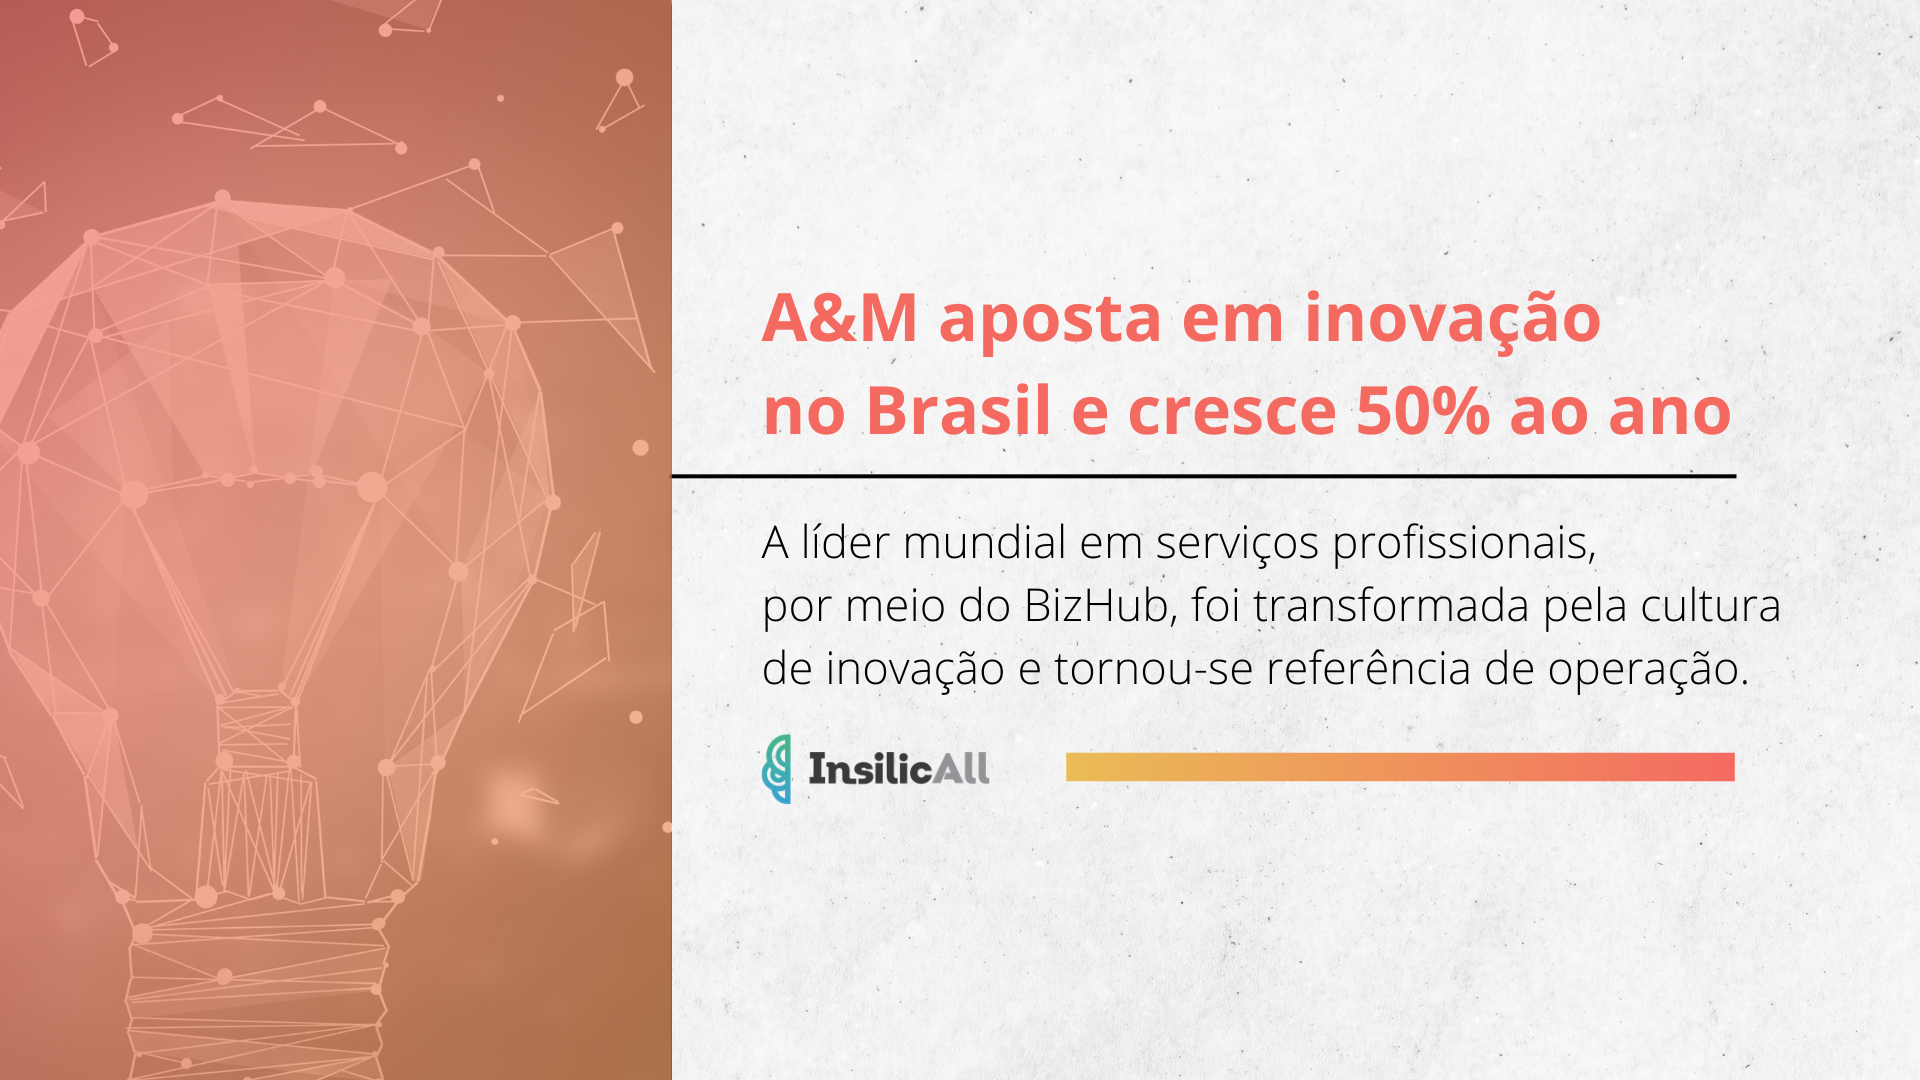 A&M aposta em inovação no Brasil e cresce 50% ao ano